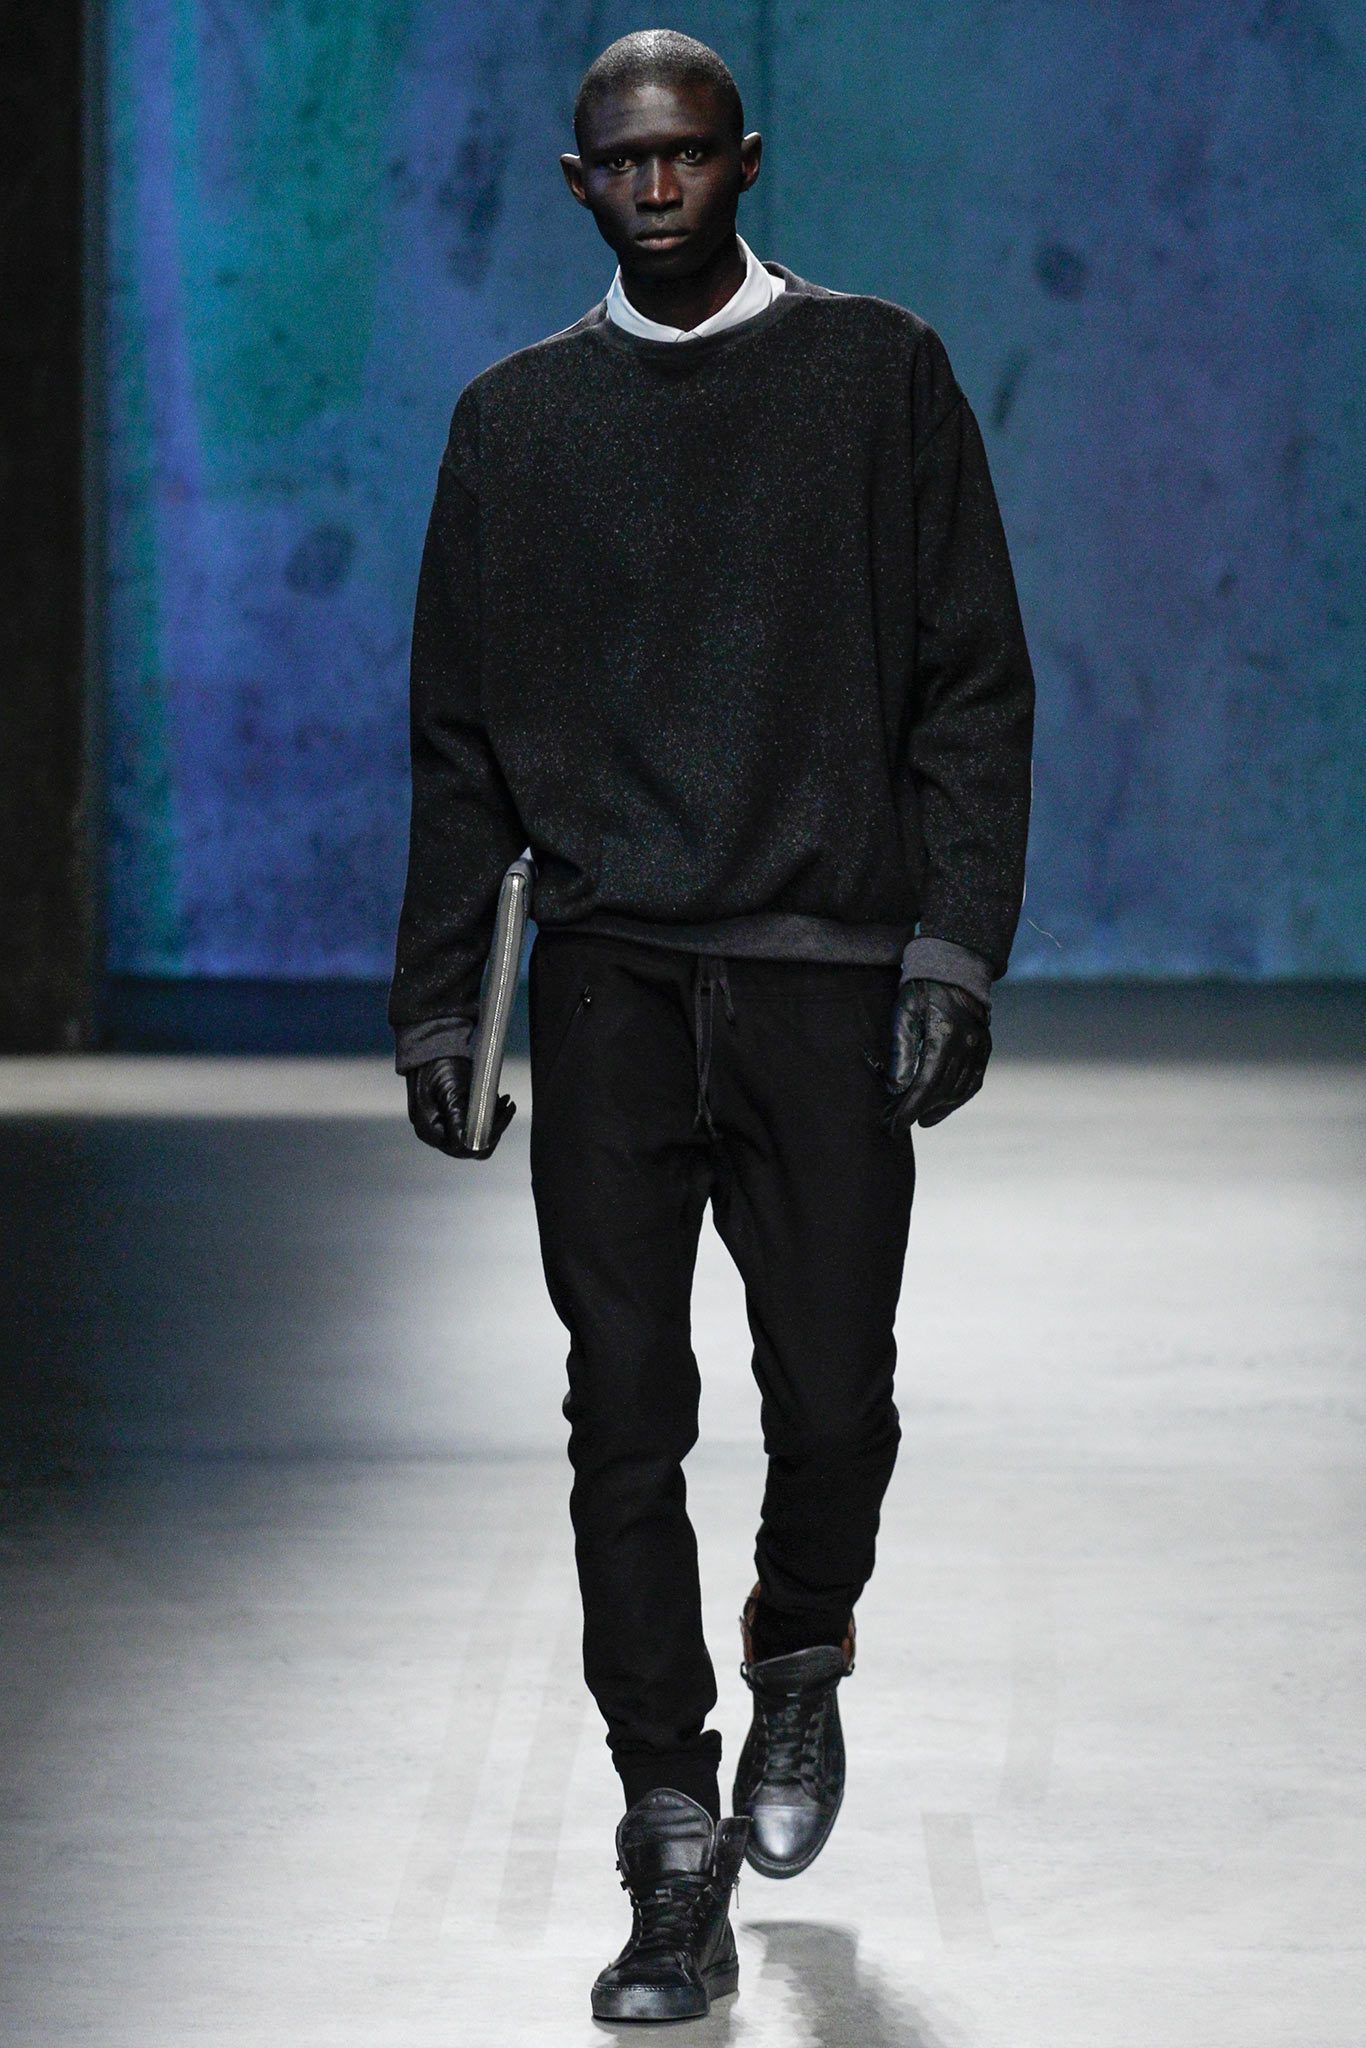 Kenneth Cole Fall/Winter 2013 – New York fashion week | Fab Fashion Fix